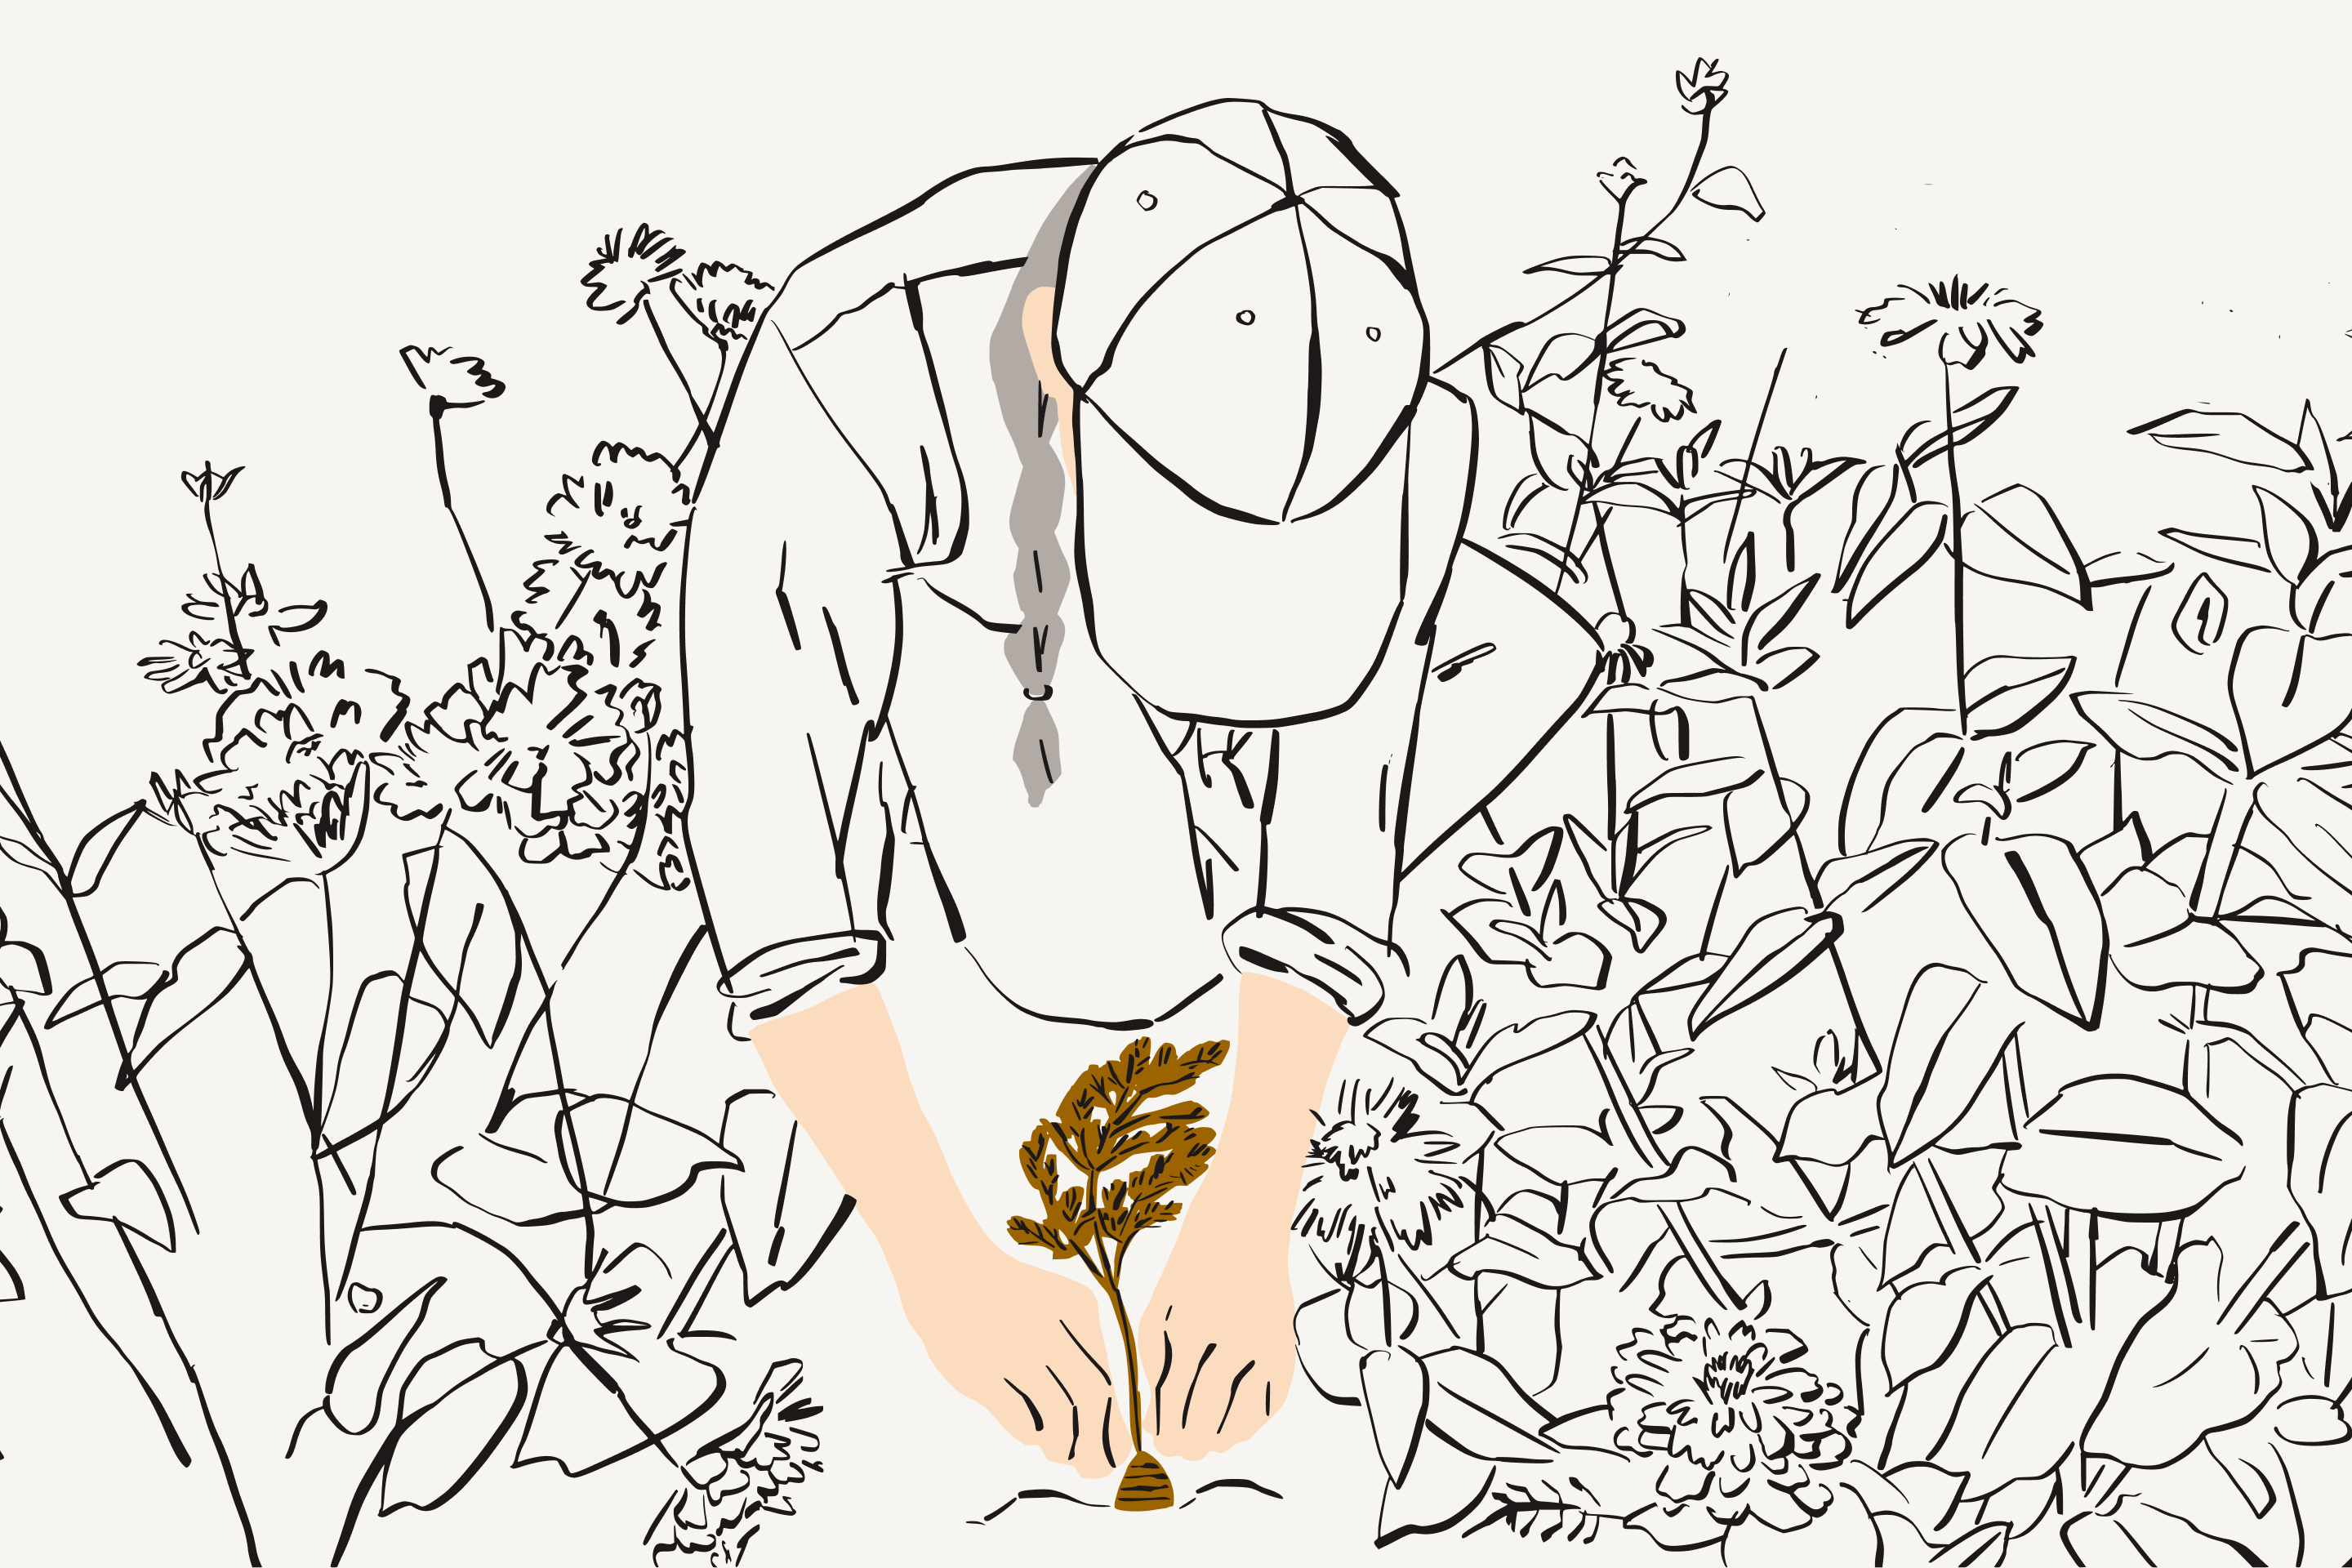 Ilustracja pokazująca kobietę otoczoną roślinami i sadzącą warzywo korzeniowe